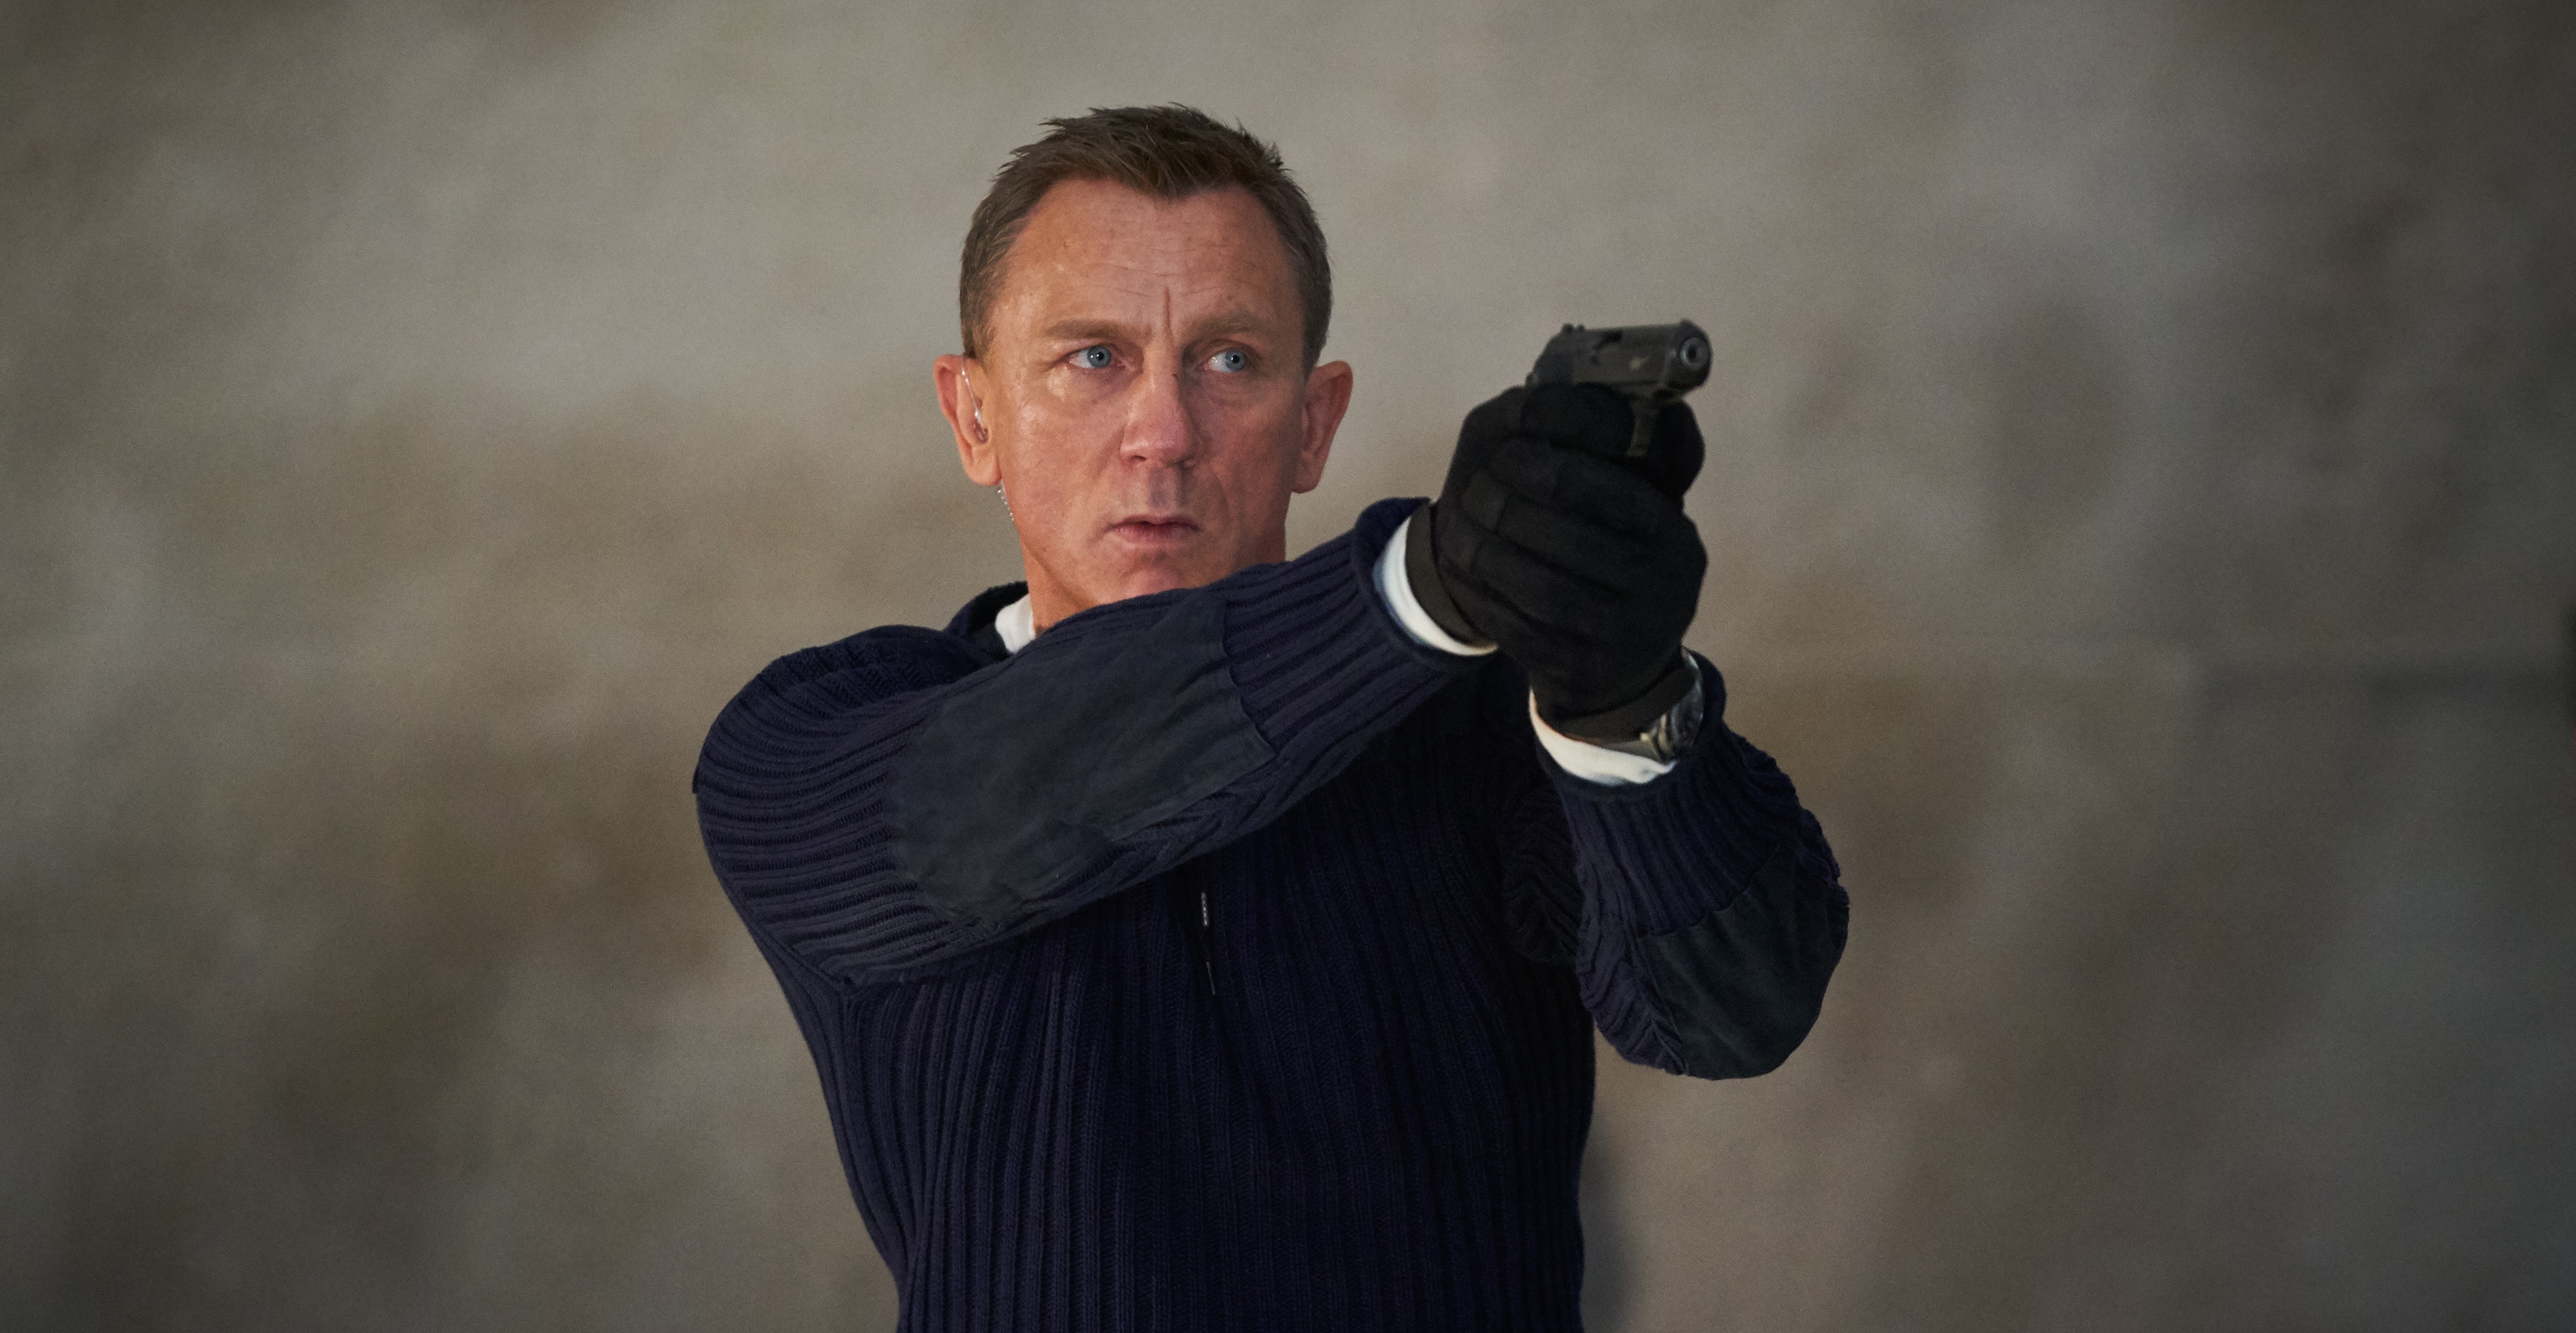 Fotografía cedida por Metro-Goldwyn-Mayer Studios, que muestra al actor británico Daniel Craig en el papel de James Bond, durante una escena del nuevo filme del famoso espía, "No Time to Die". (Foto Prensa Libre: EFE)
